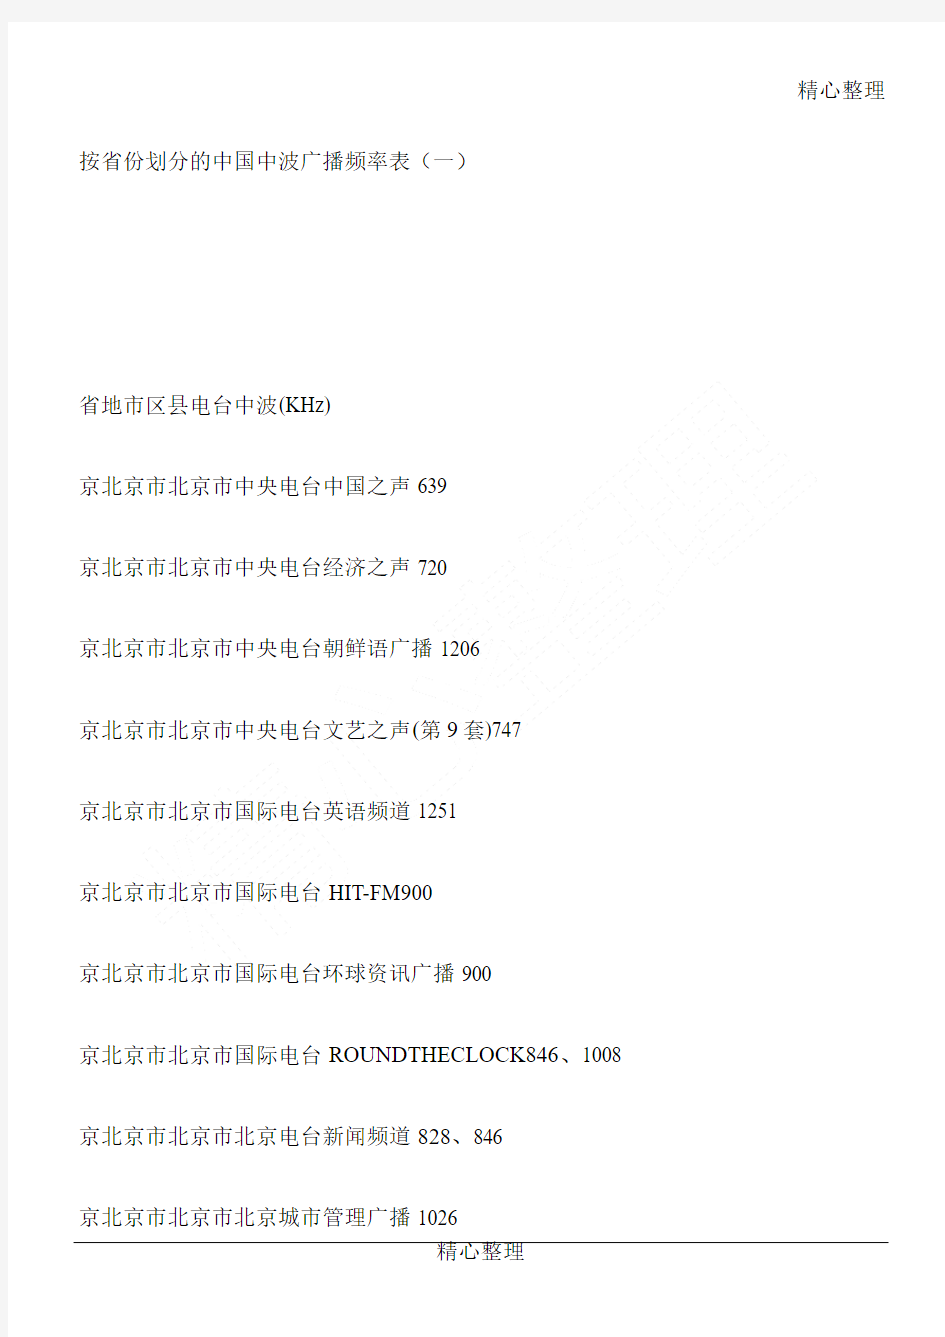 中国中波广播频率表(按省份划分的)